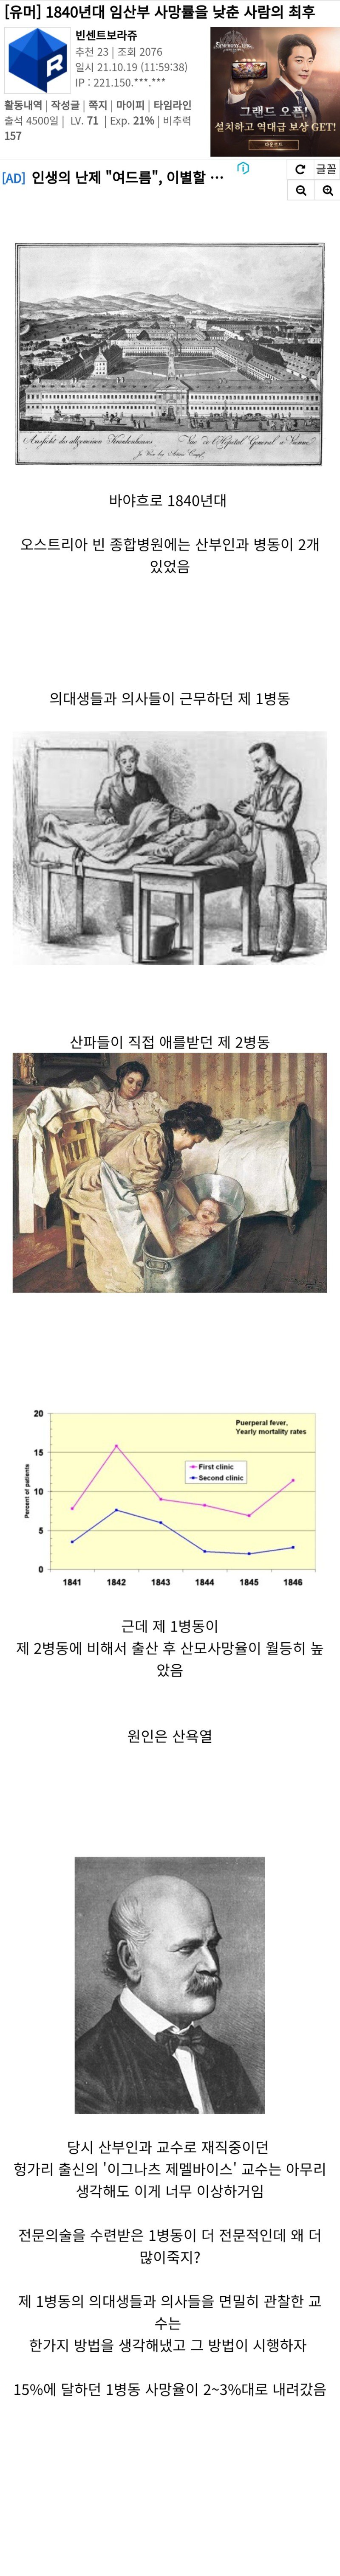 1840년대 임산부 사망률을 낮춘 사람의 최후